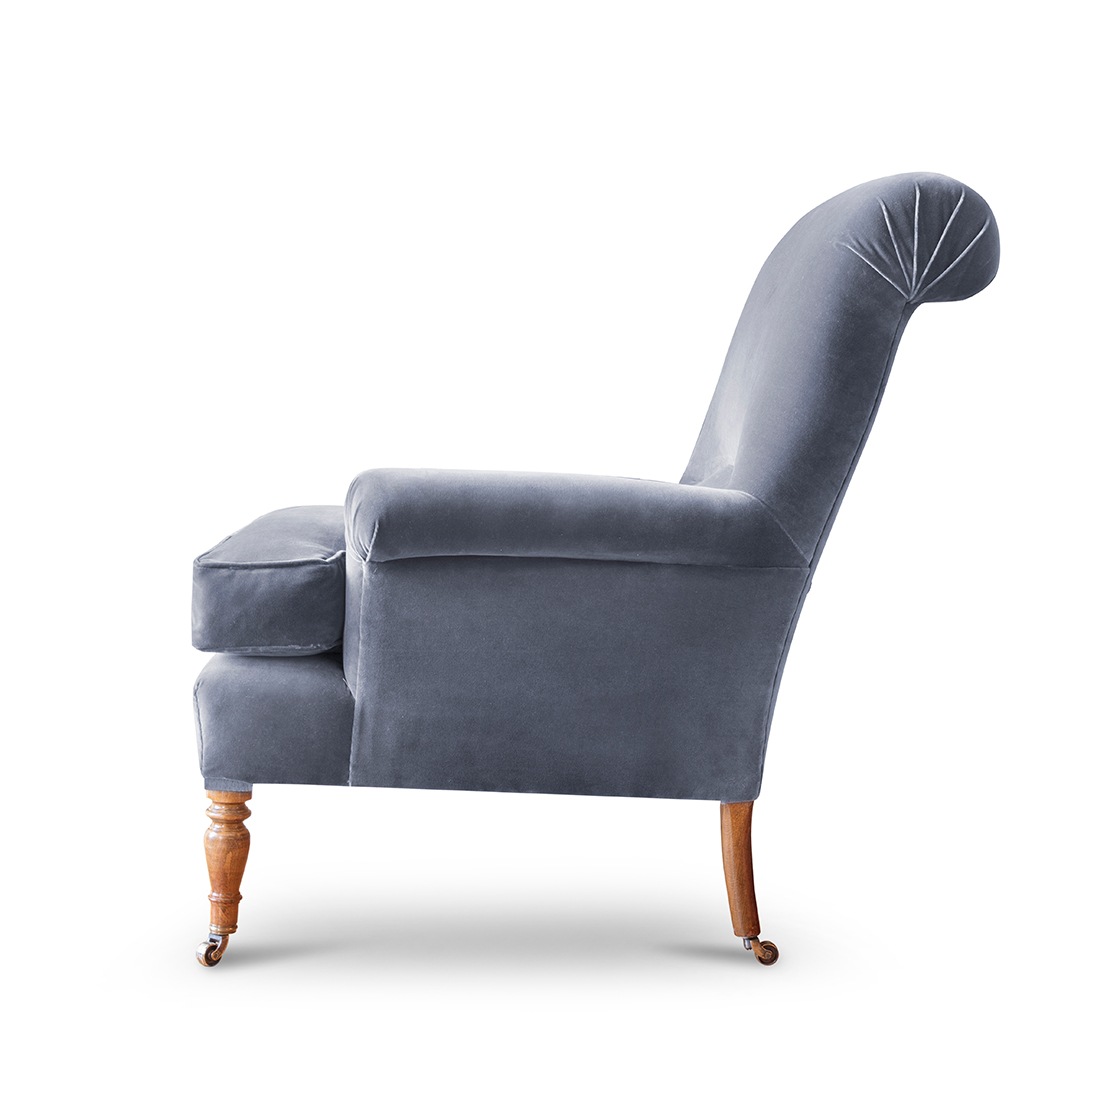 Bennett chair in Zafra cotton velvet - Graphite - Beaumont & Fletcher